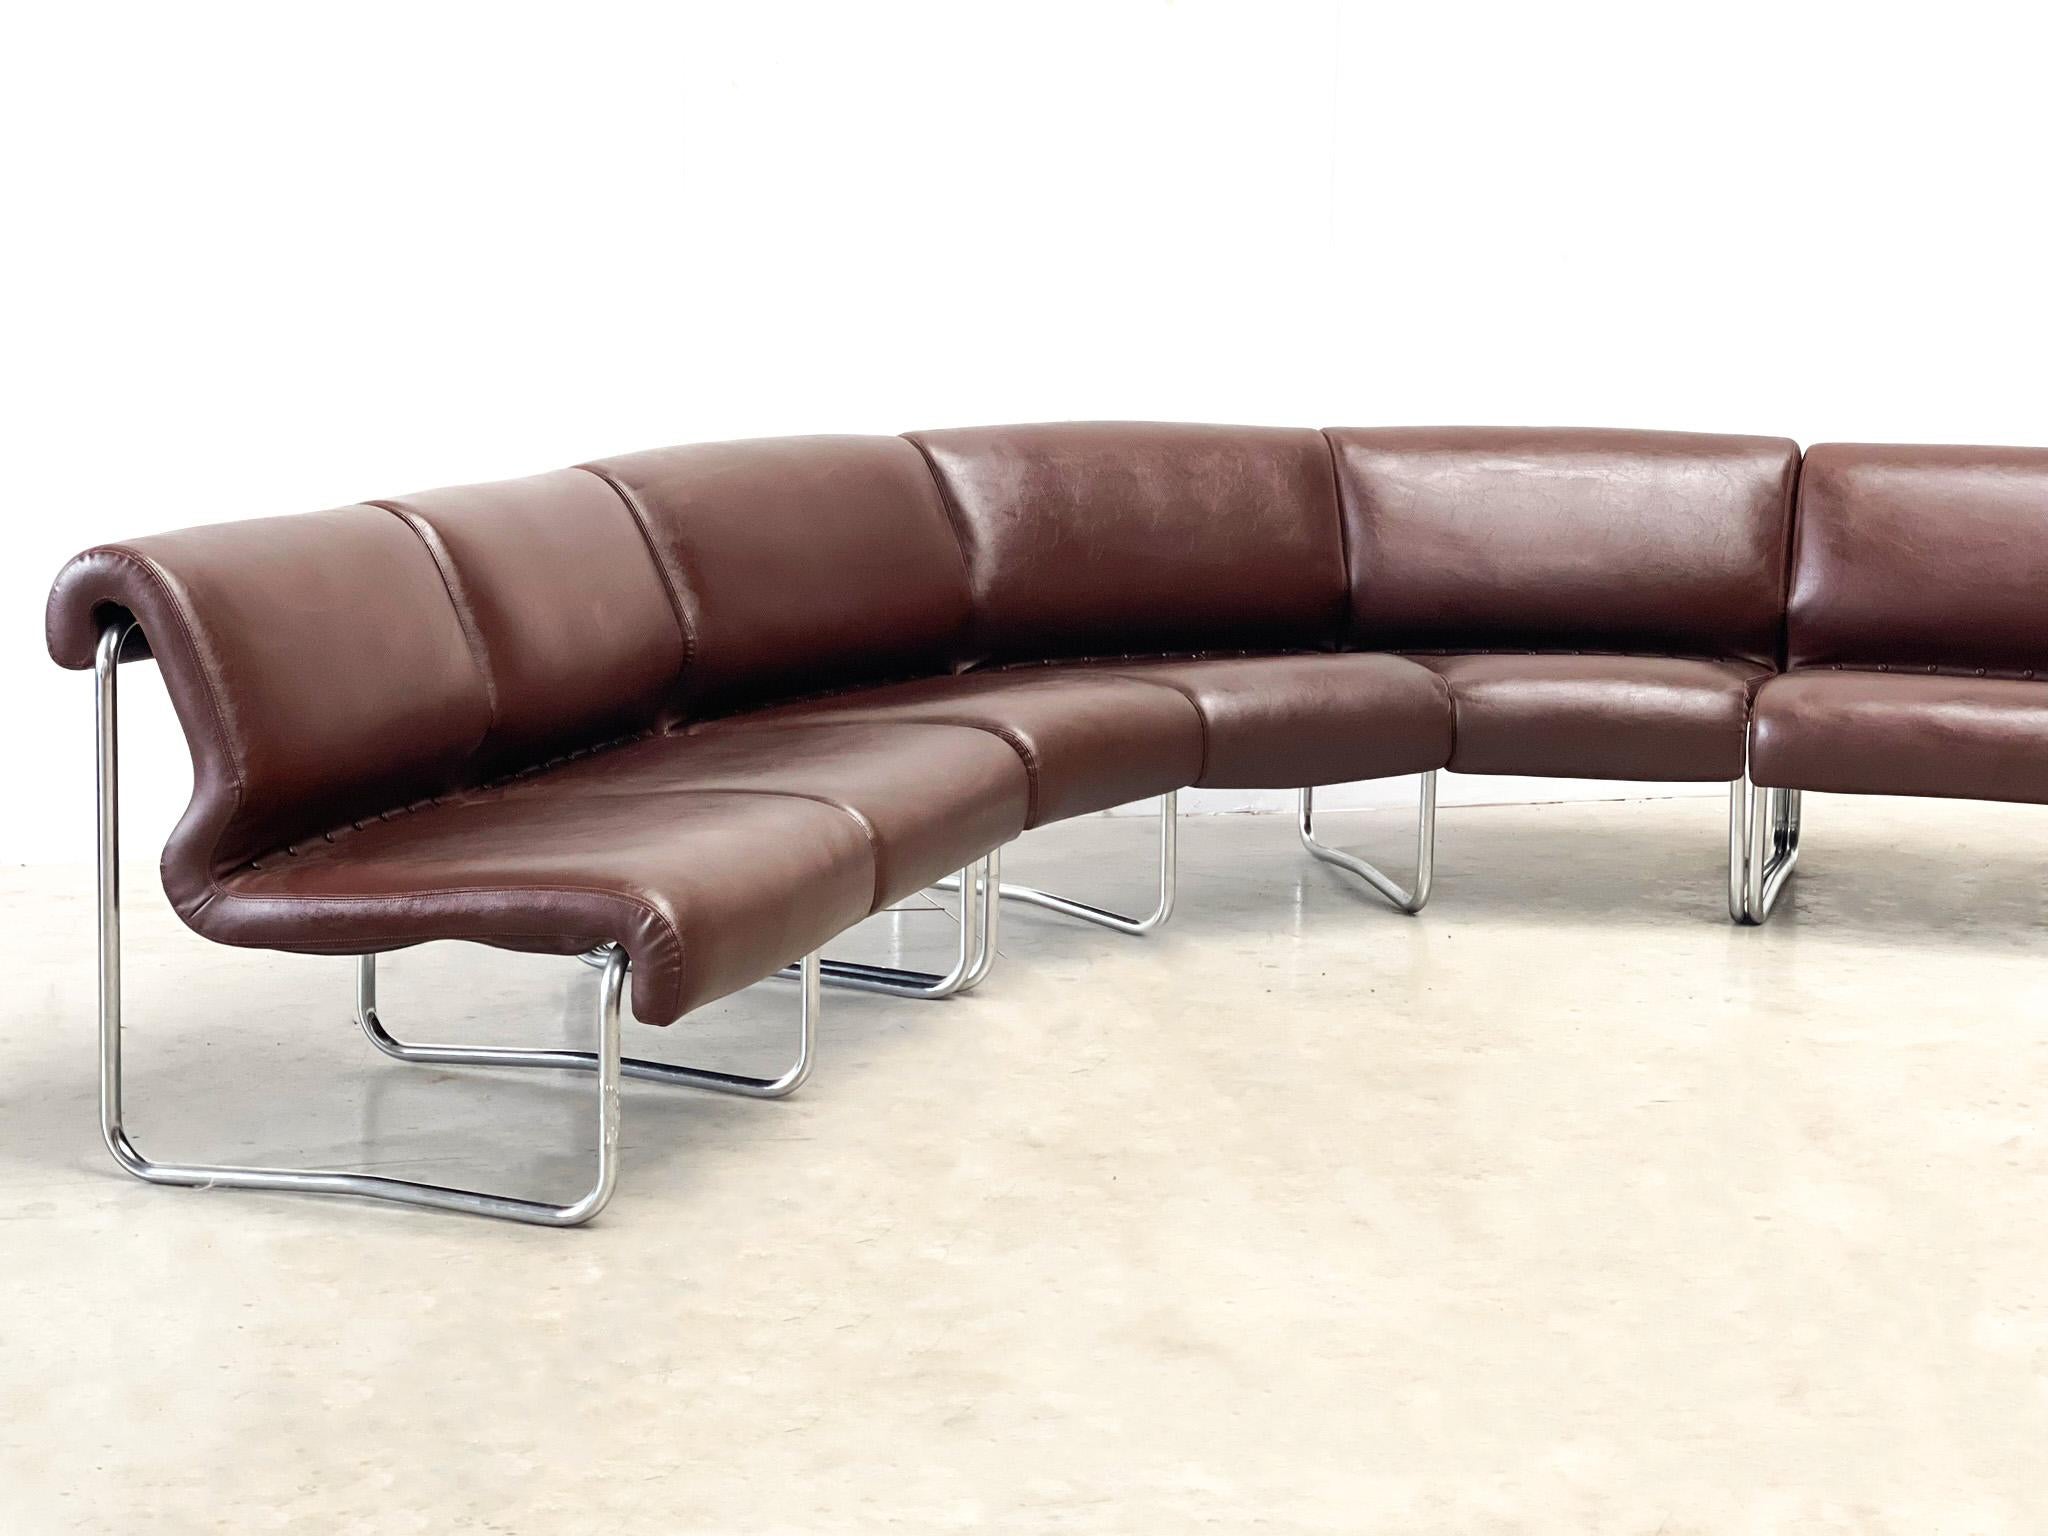 Ensemble de canapé modulaire en chêne des années 1970 avec un superbe cuir marron et des pieds en bois.  cadre métallique
Le canapé peut être configuré comme indiqué ou en sections autour de la pièce. Il comprend un siège 3 places, un siège 2 places